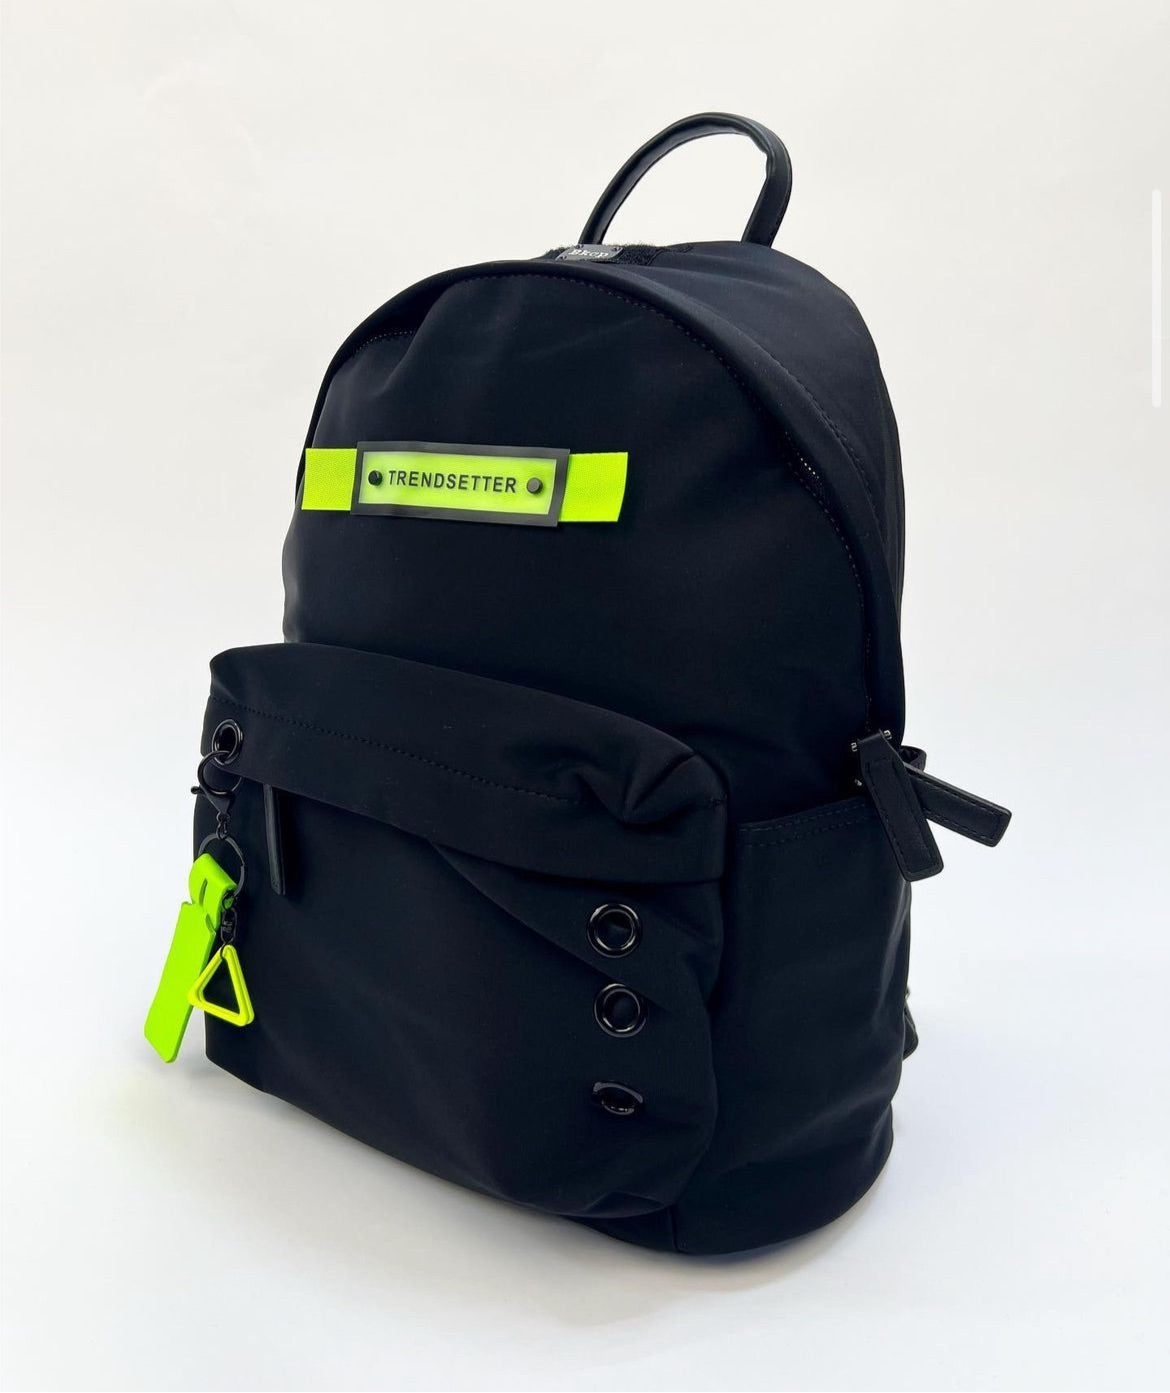 BKCP trendsetter backpack